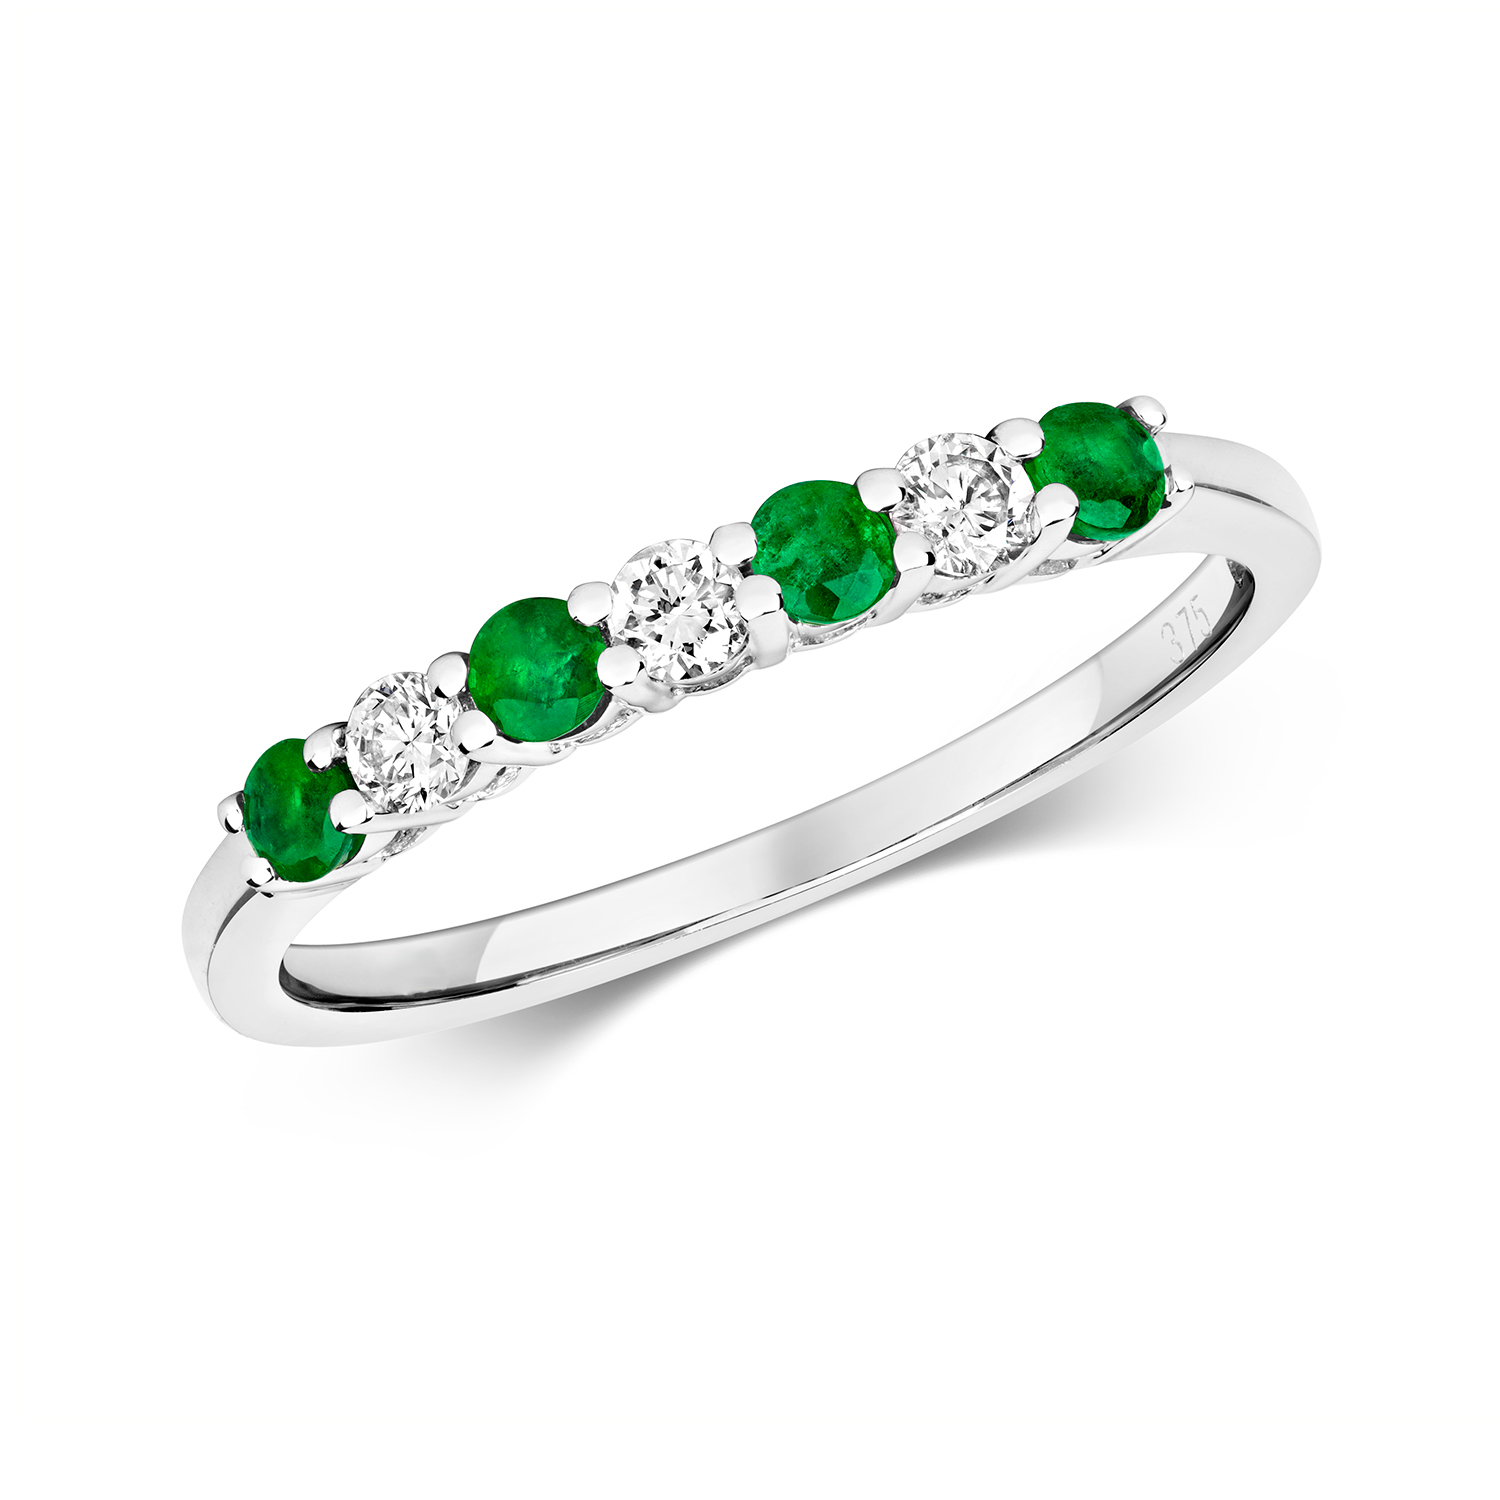 Emerald & Diamond 7 Stone Ring (Rd438e)